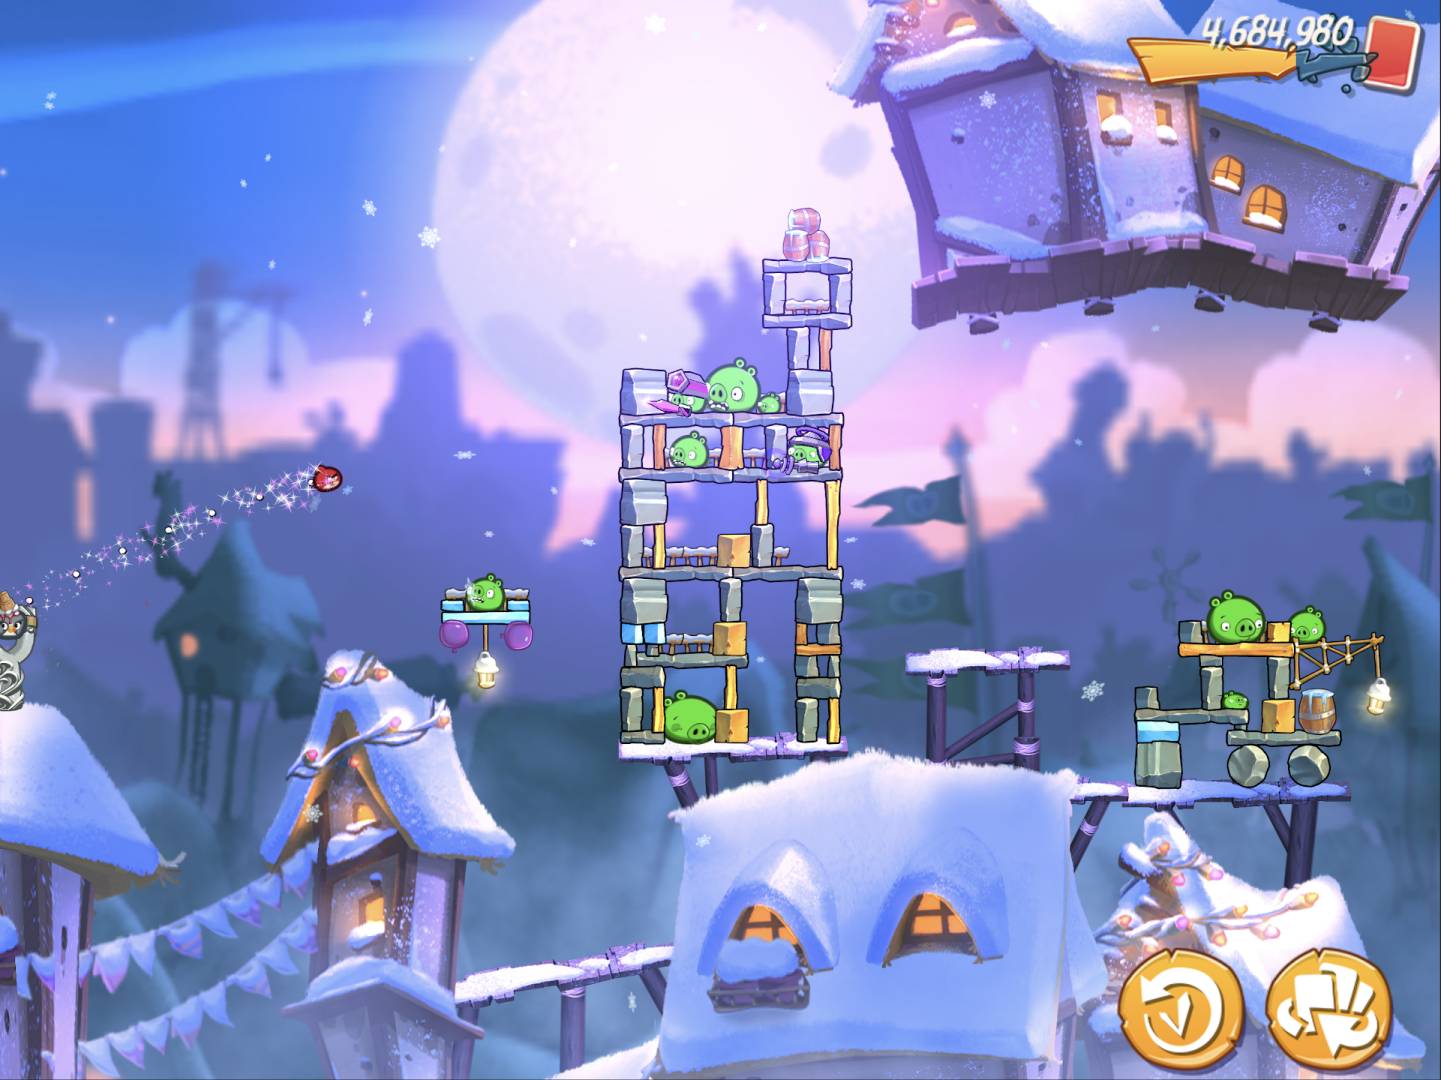 Rekomendasi Game Android Offline Terbaik dan Terbaru - Angry Birds 2